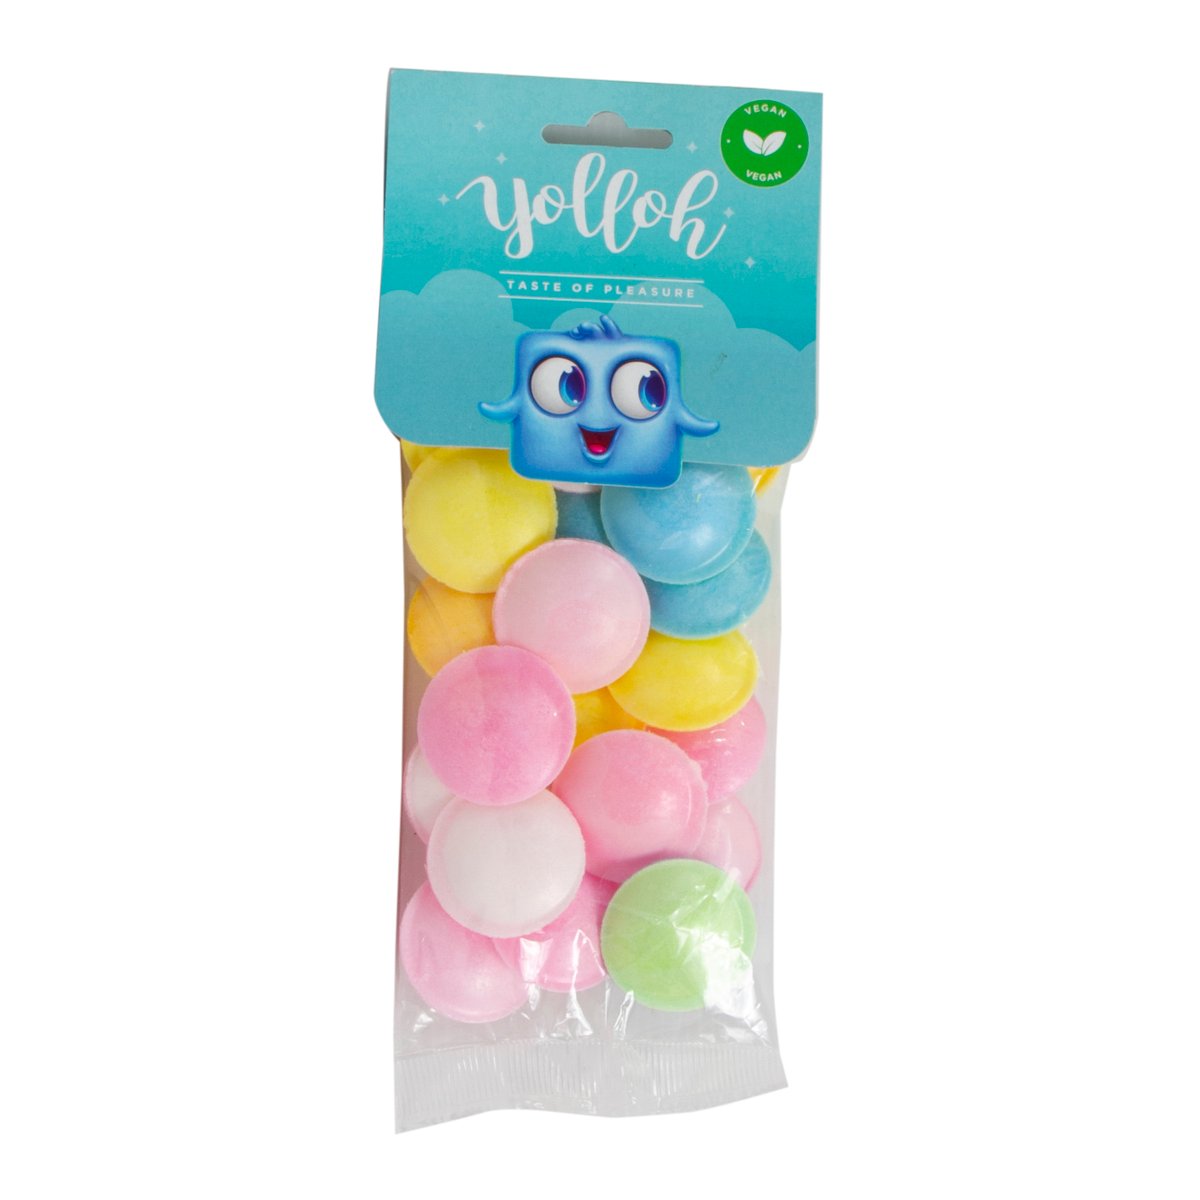 Yolloh Taste Of Pleasure Ufos 25g Online At Best Price Candy Bags Lulu Ksa Price In Saudi 8399